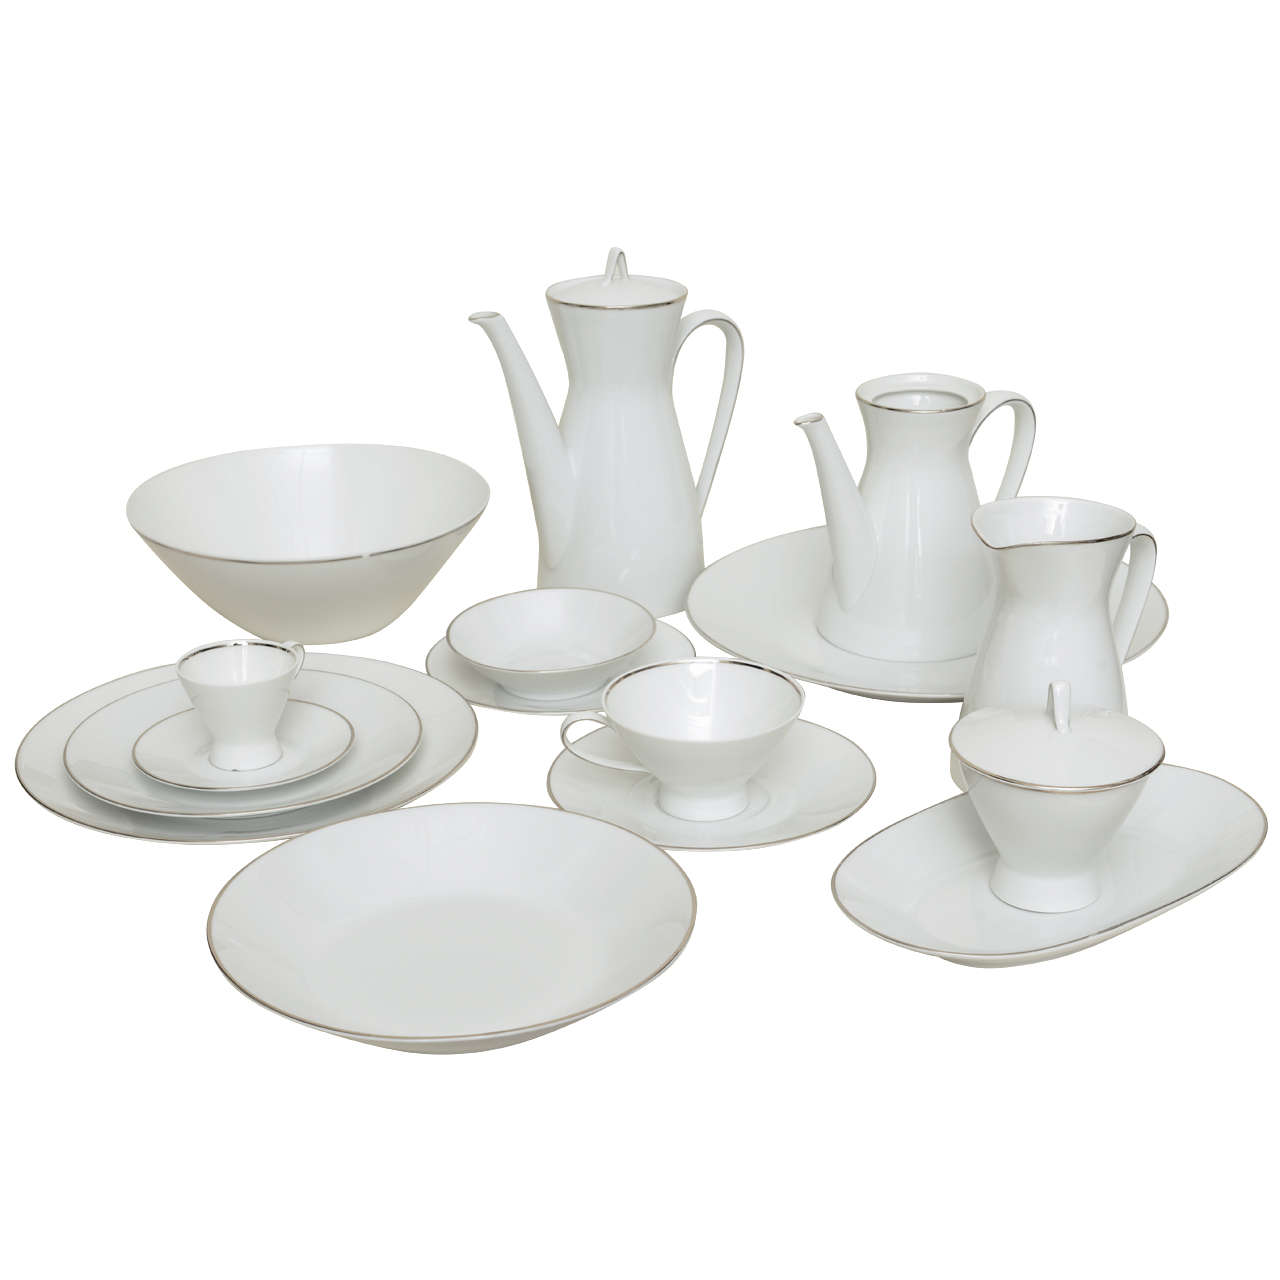 Rosenthal Vintage Porcelain Dinner Service/Tableware